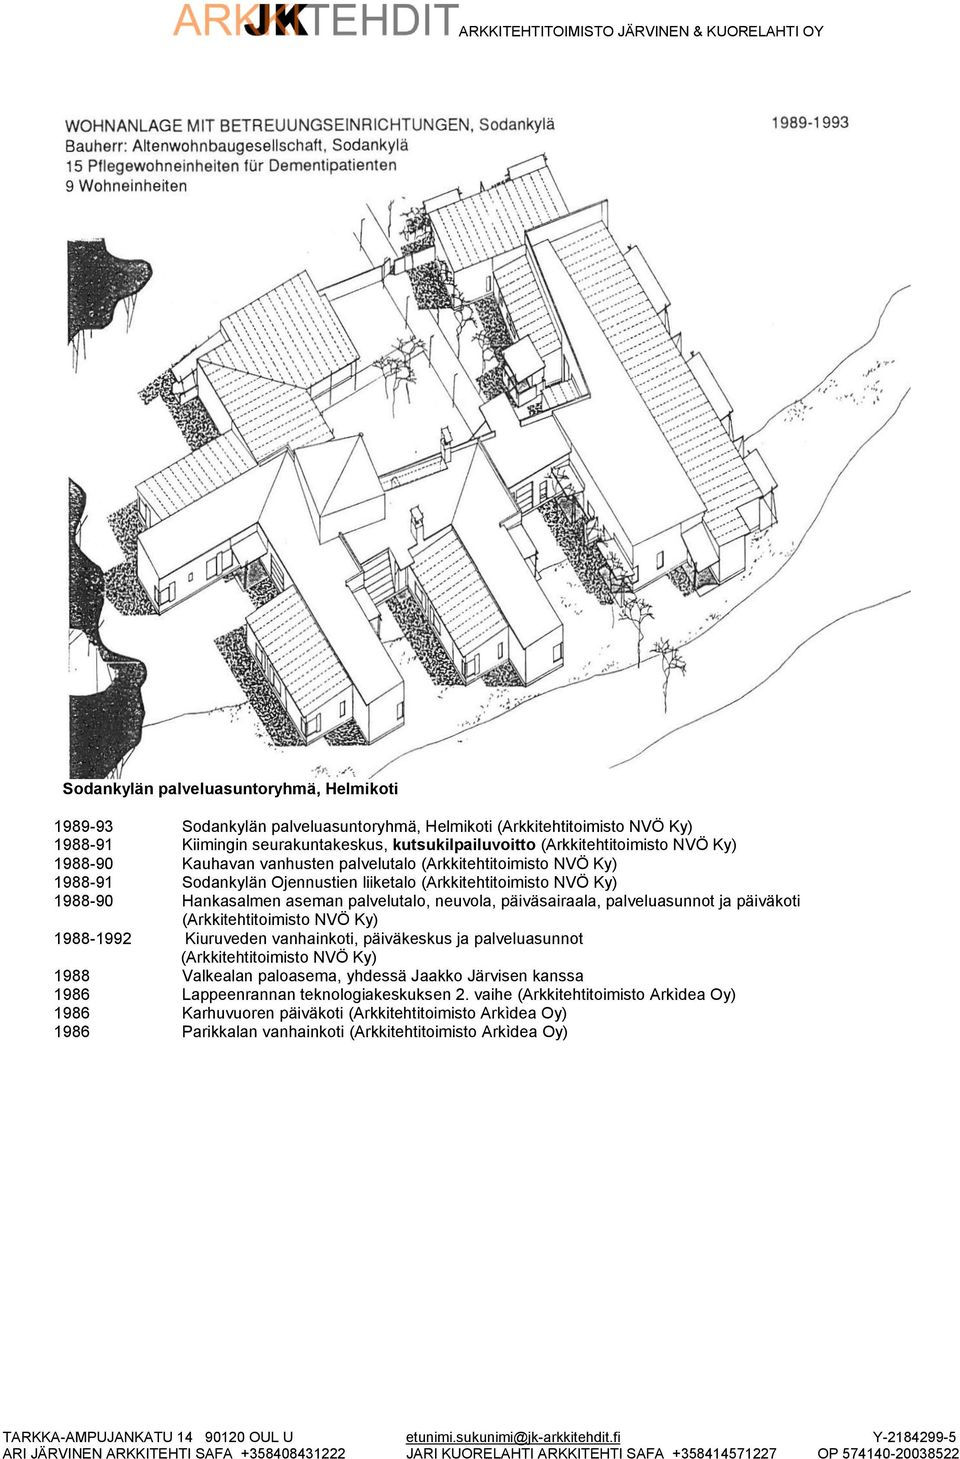 päiväsairaala, palveluasunnot ja päiväkoti (Arkkitehtitoimisto NVÖ Ky) 1988-1992 Kiuruveden vanhainkoti, päiväkeskus ja palveluasunnot (Arkkitehtitoimisto NVÖ Ky) 1988 Valkealan paloasema, yhdessä